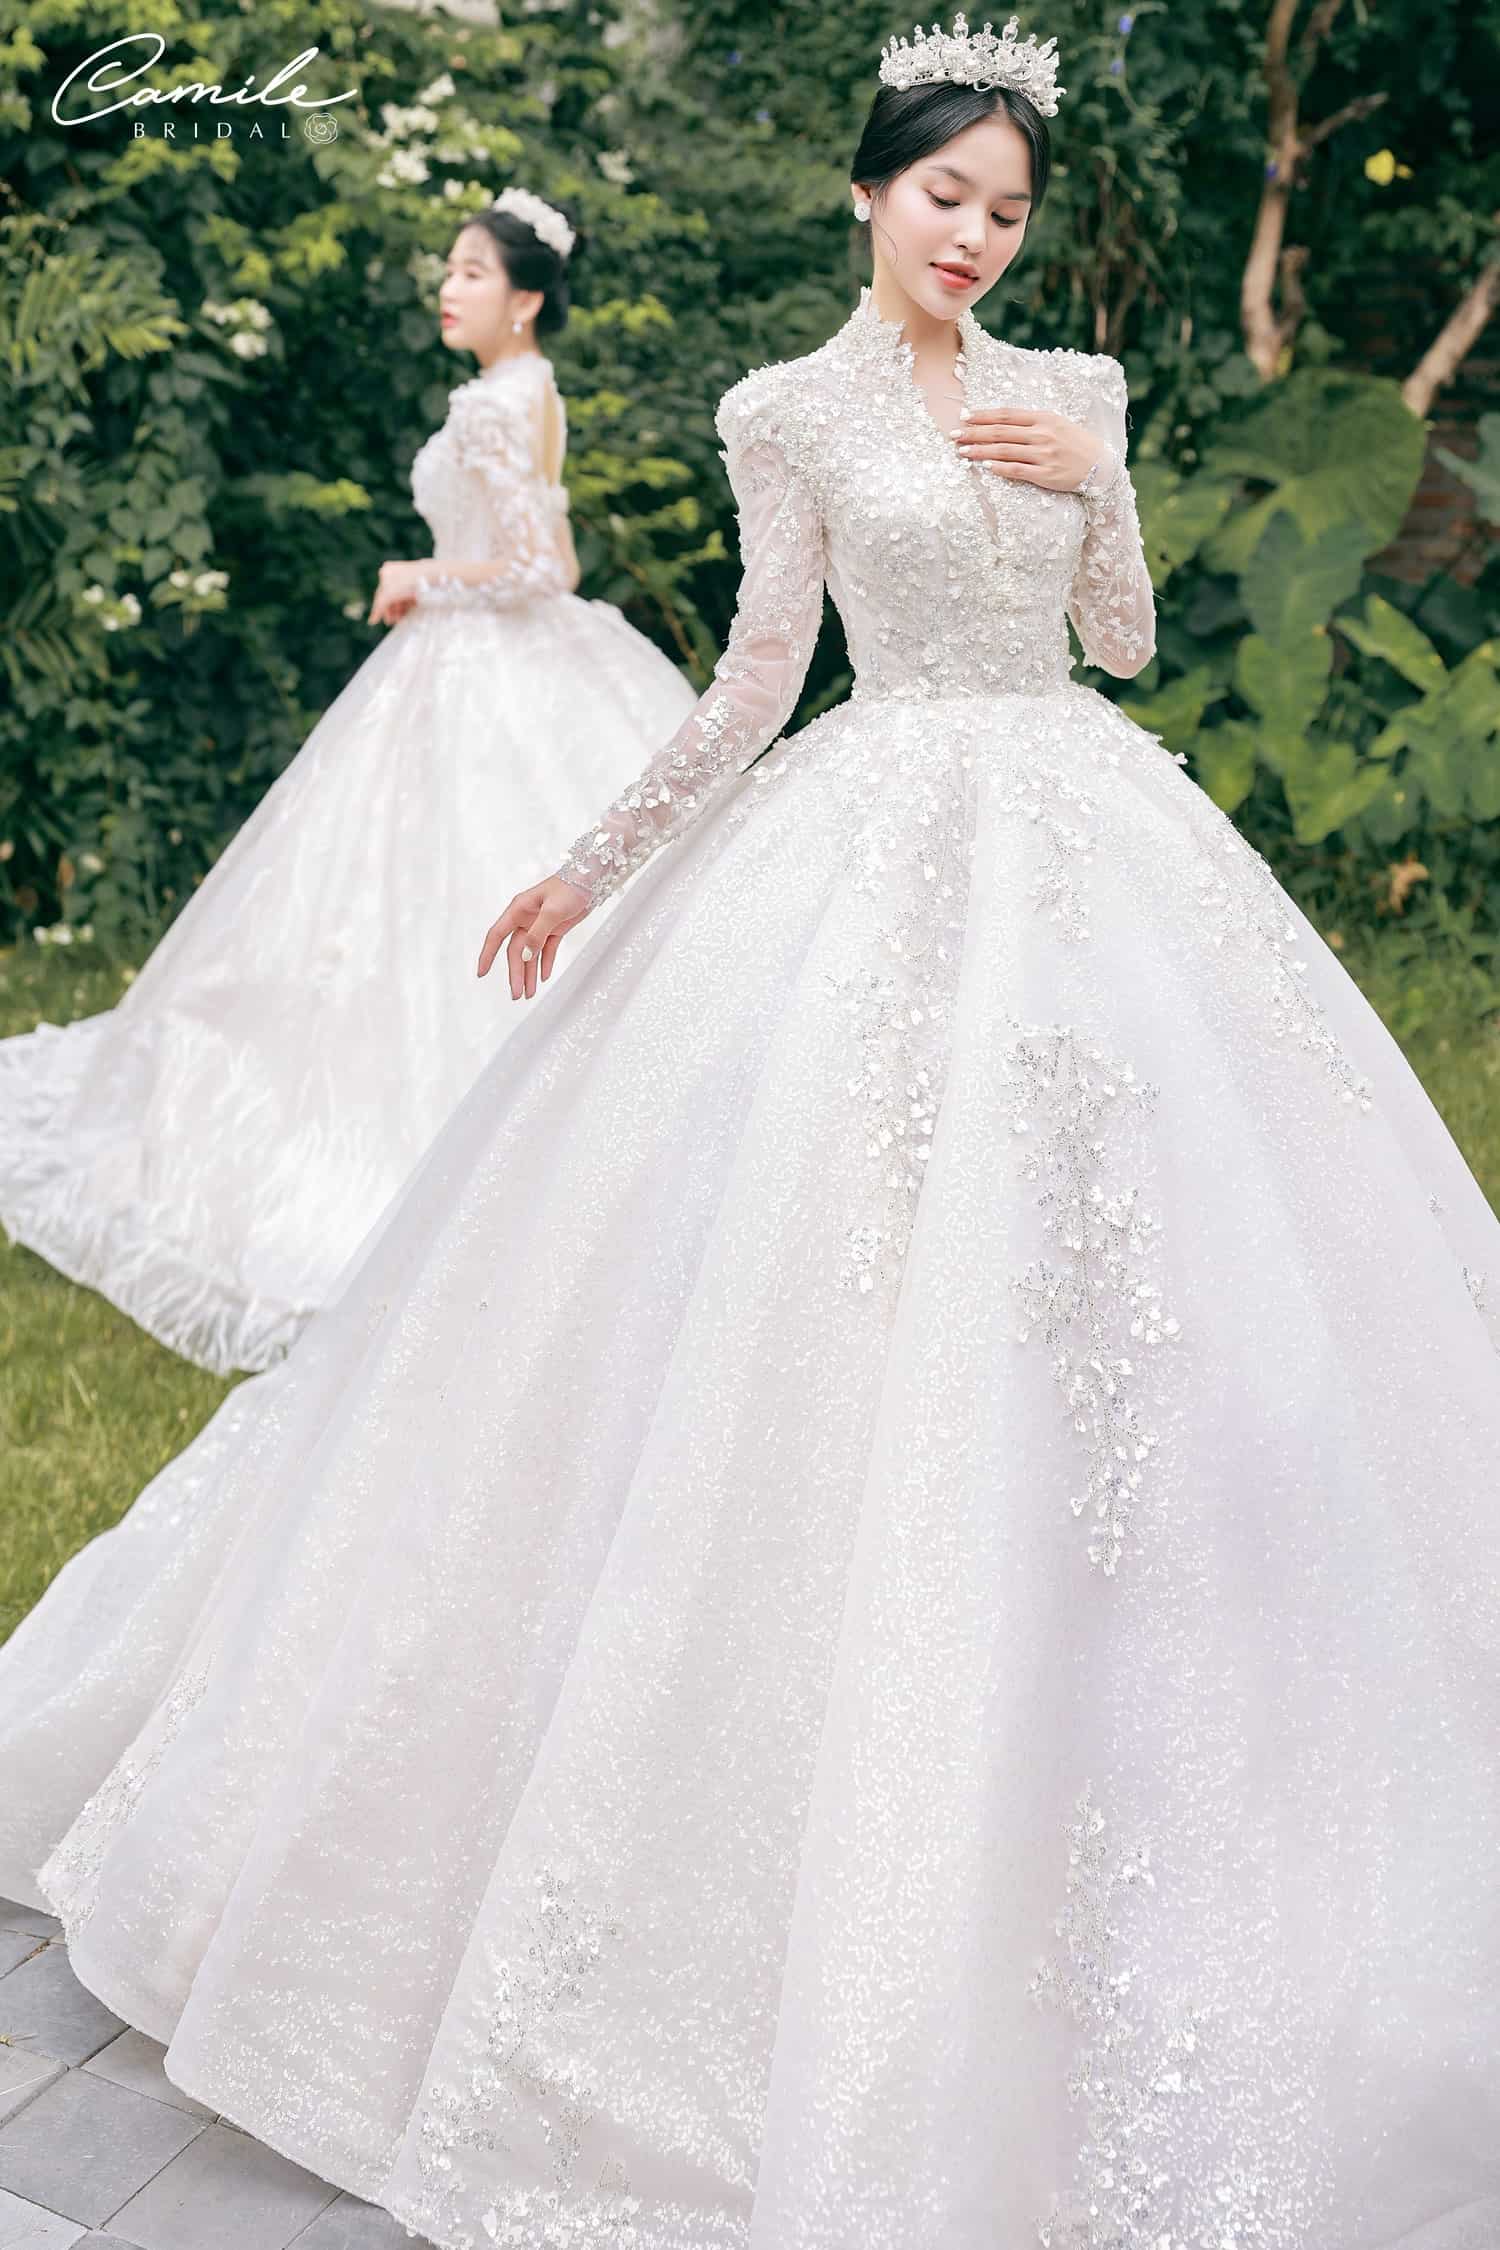 Gợi ý 15+ mẫu váy cưới công chúa đáng yêu nhất - Kế Hoạch Cưới